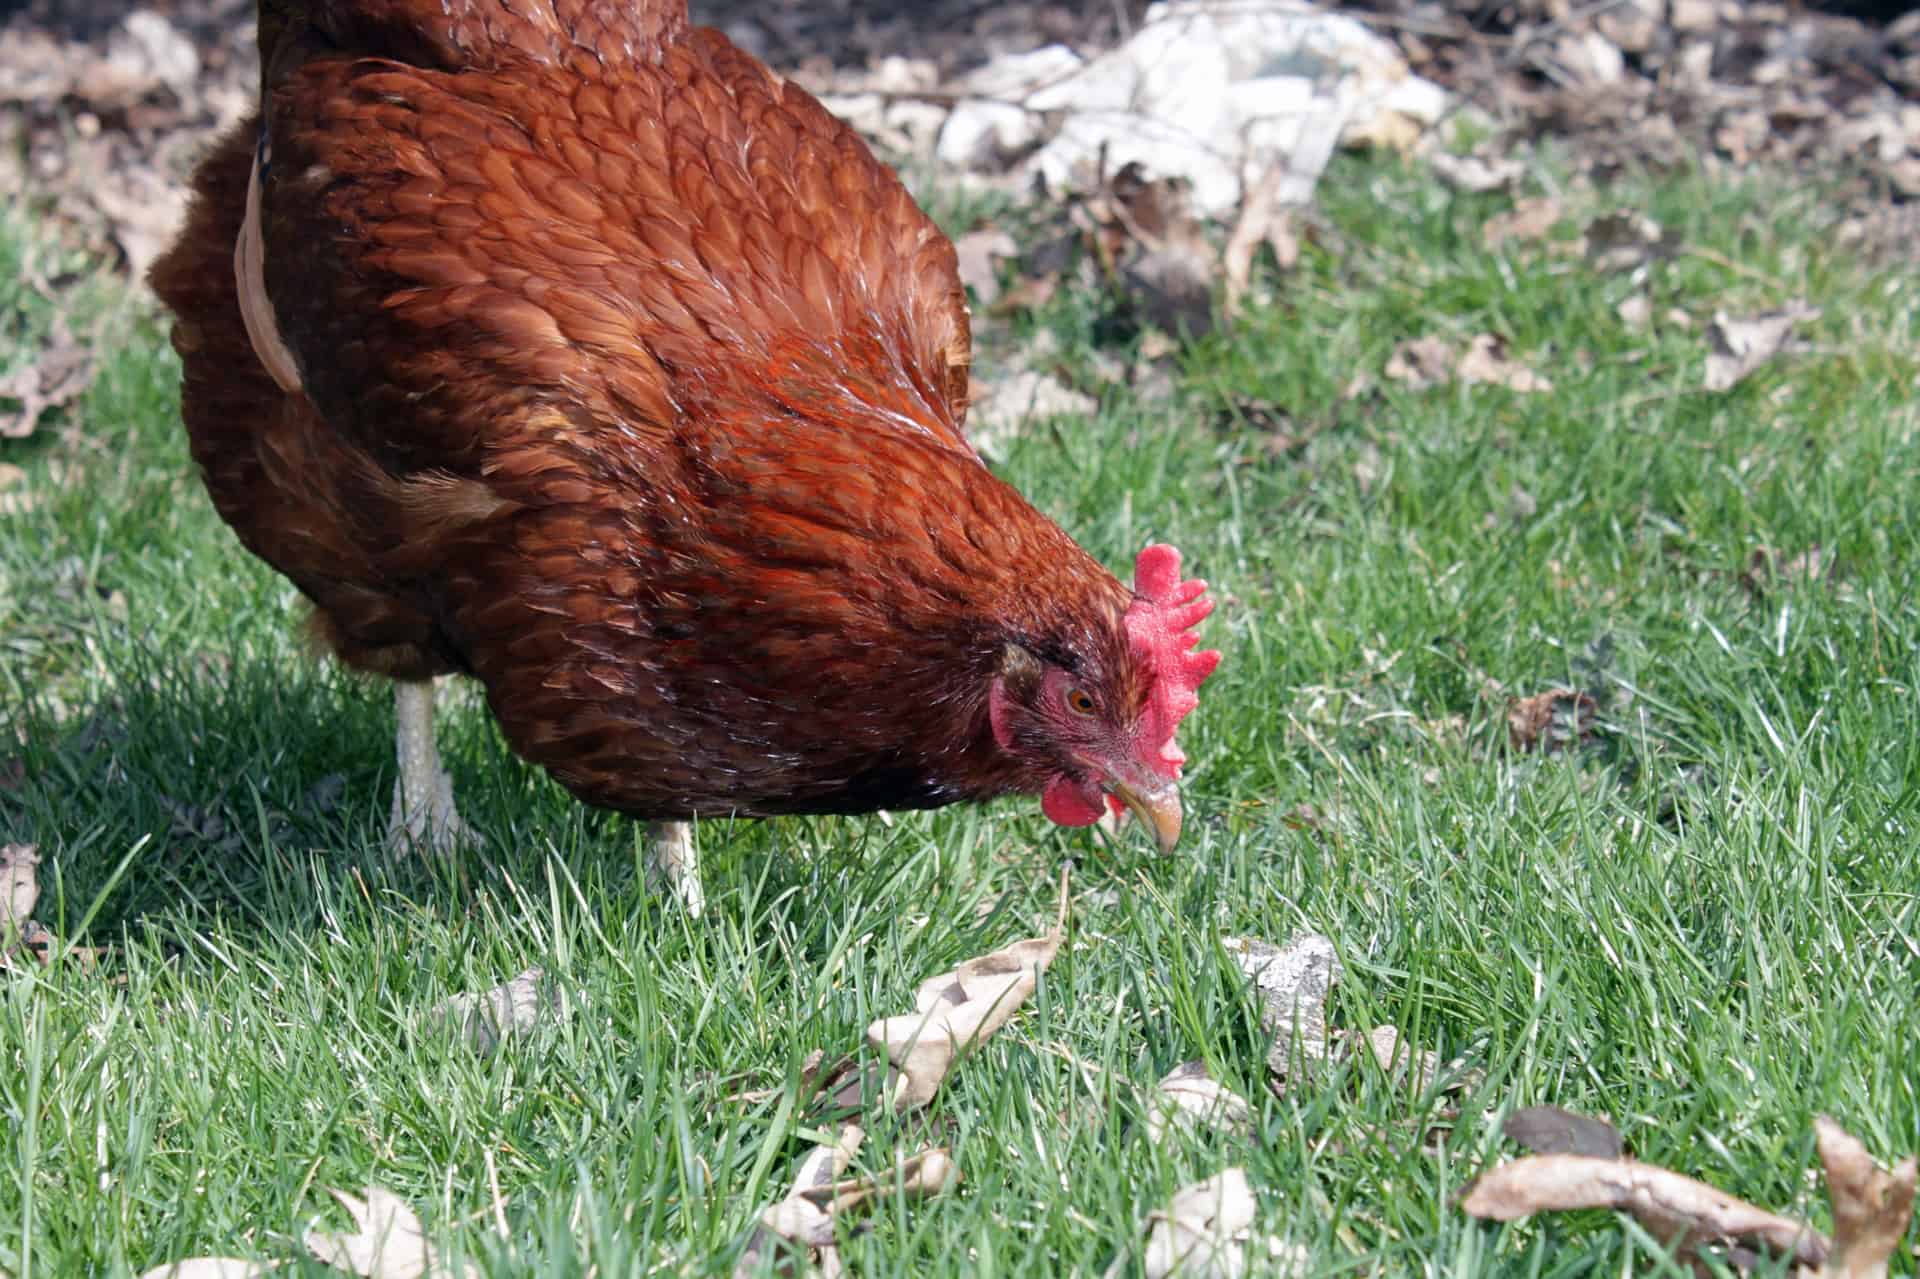 rhode island red chicken hunting in grass